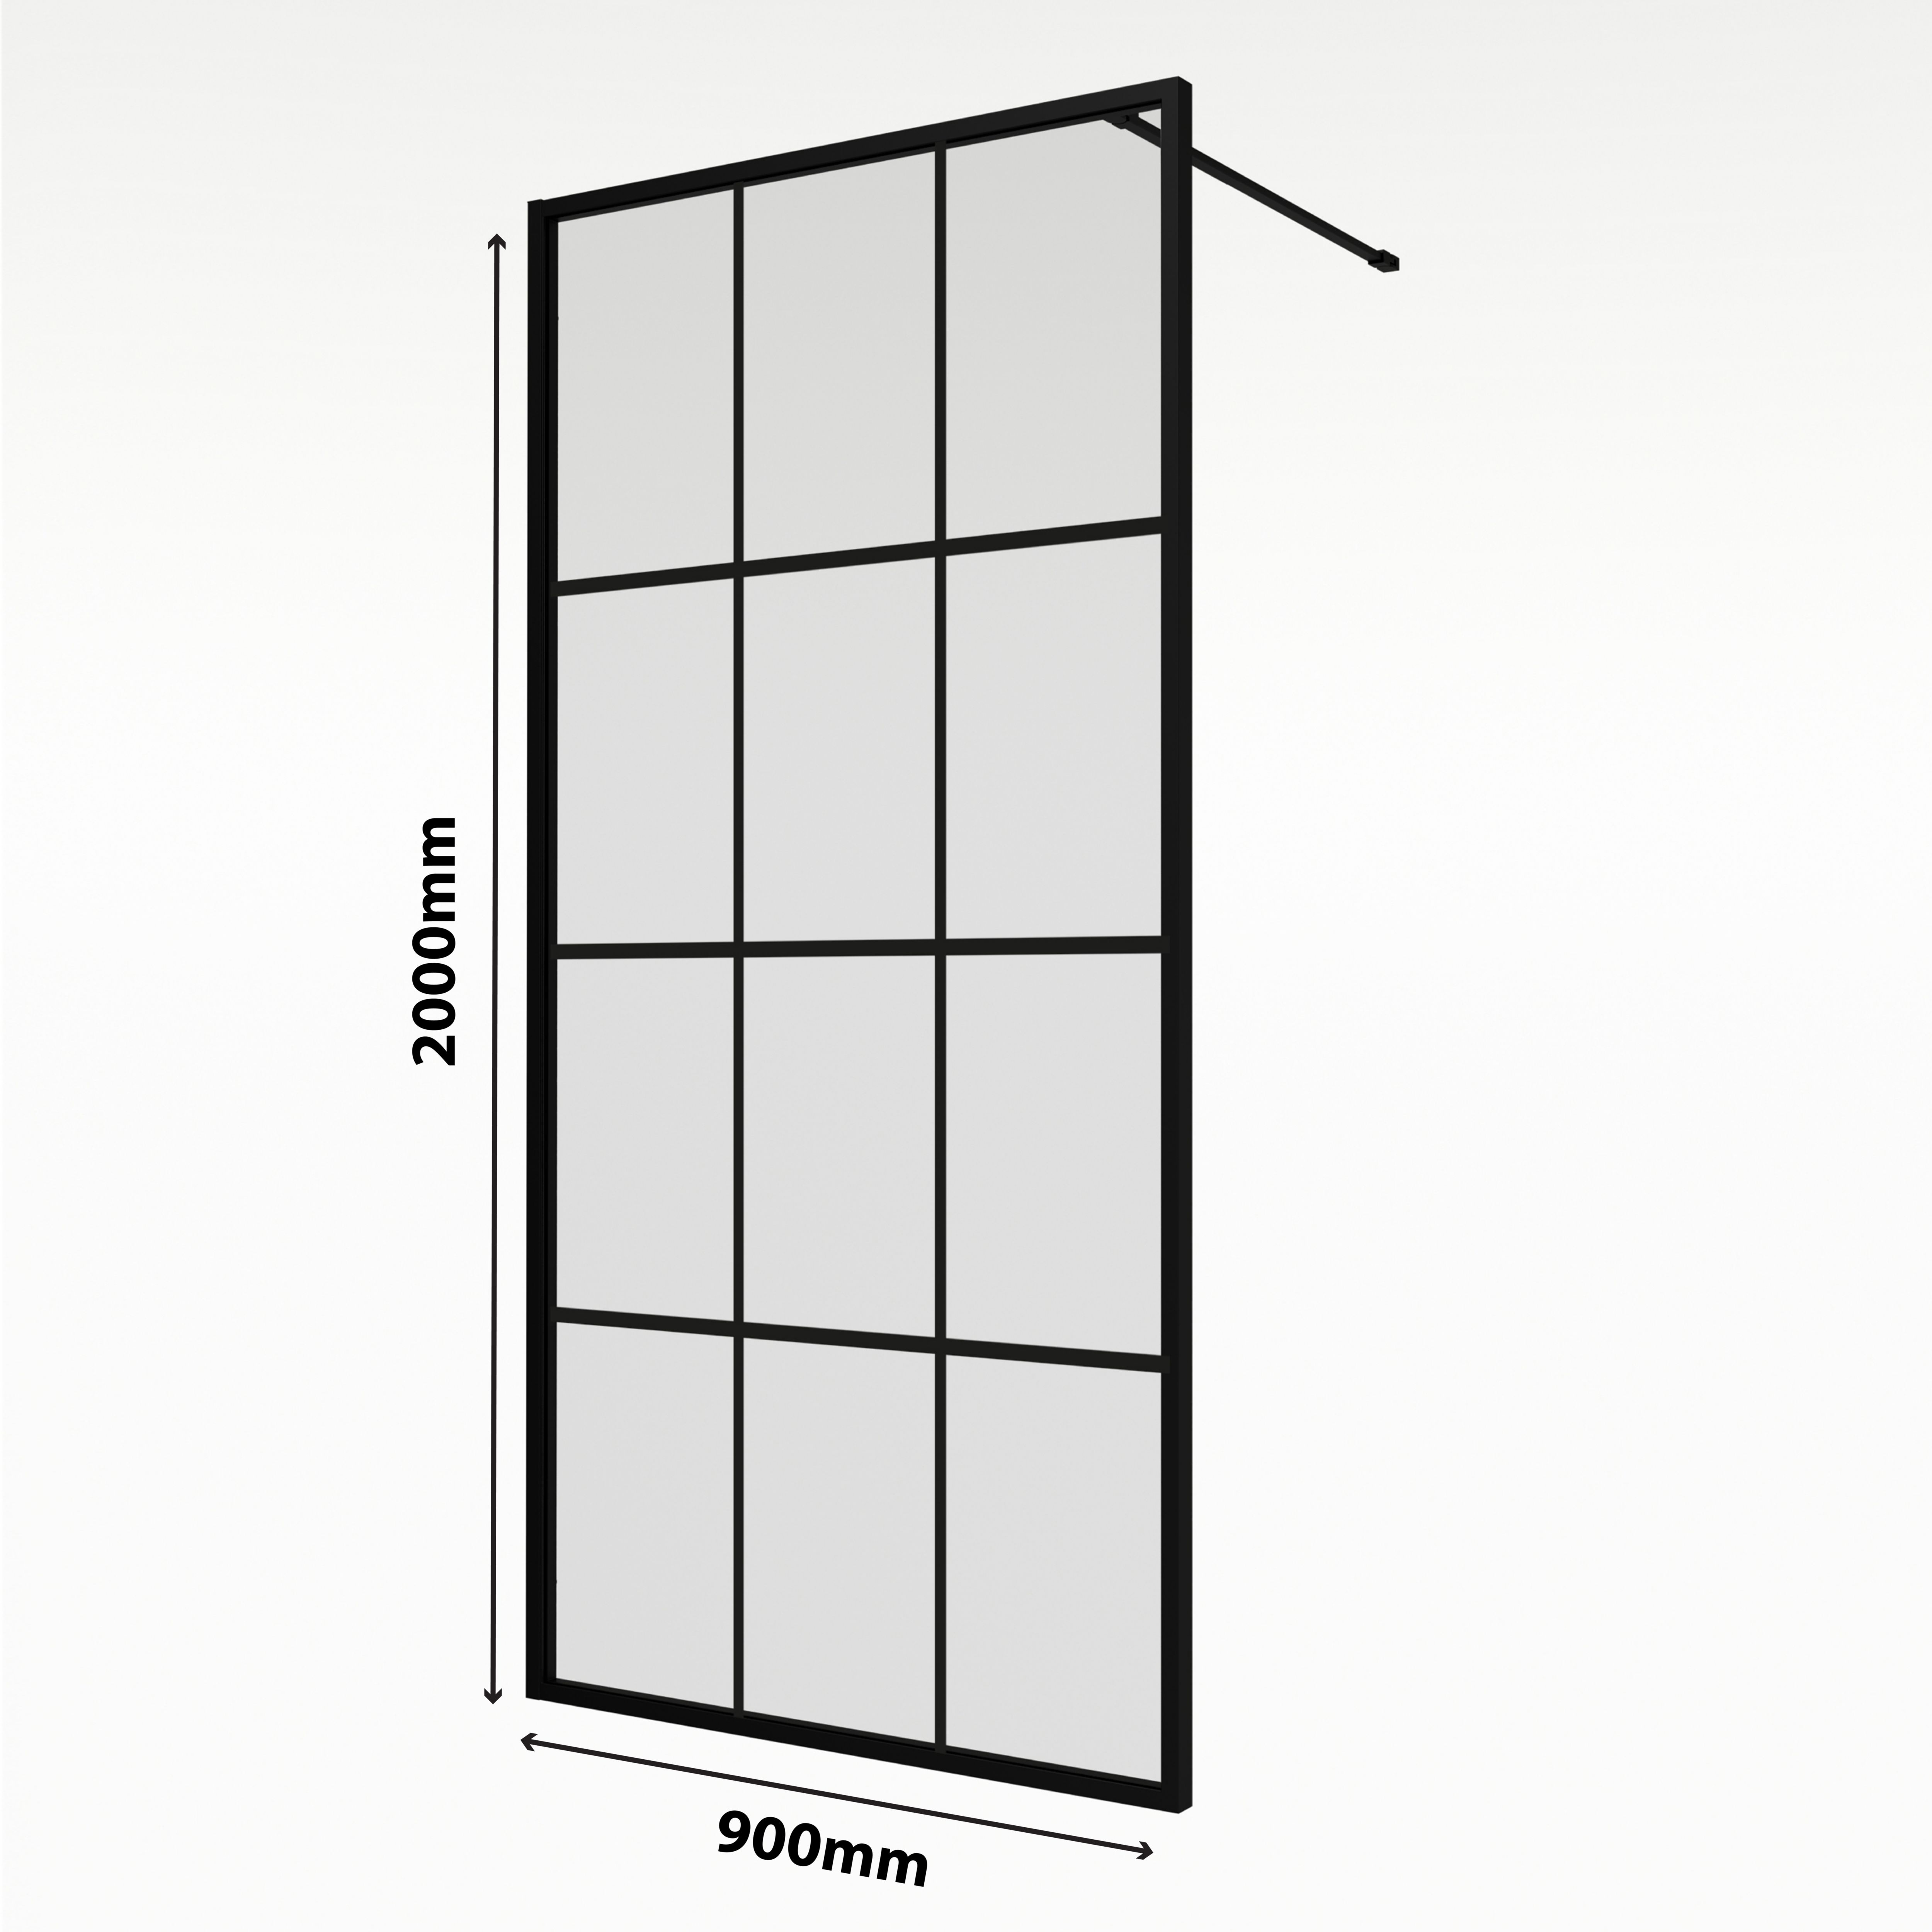 Aqualux AQ PRO Matt Black Crittall Single Wet room glass screen (H)200cm (W)90cm